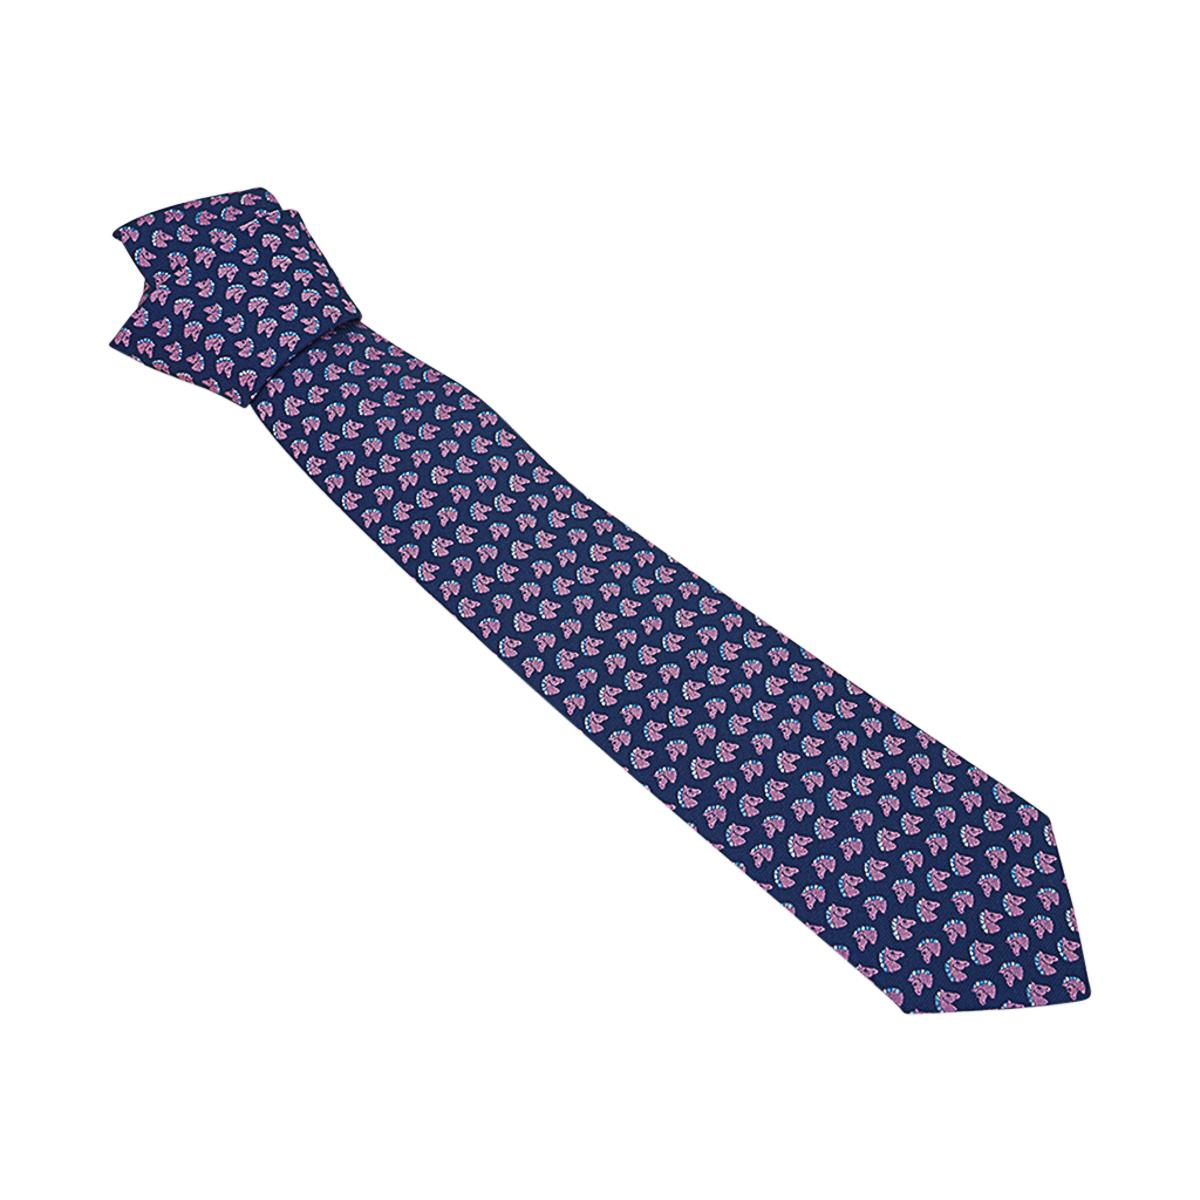 Men's Hermes 7 Cheval Rebelle Tie Marine Rose Bleu Heavy Silk Twill For Sale